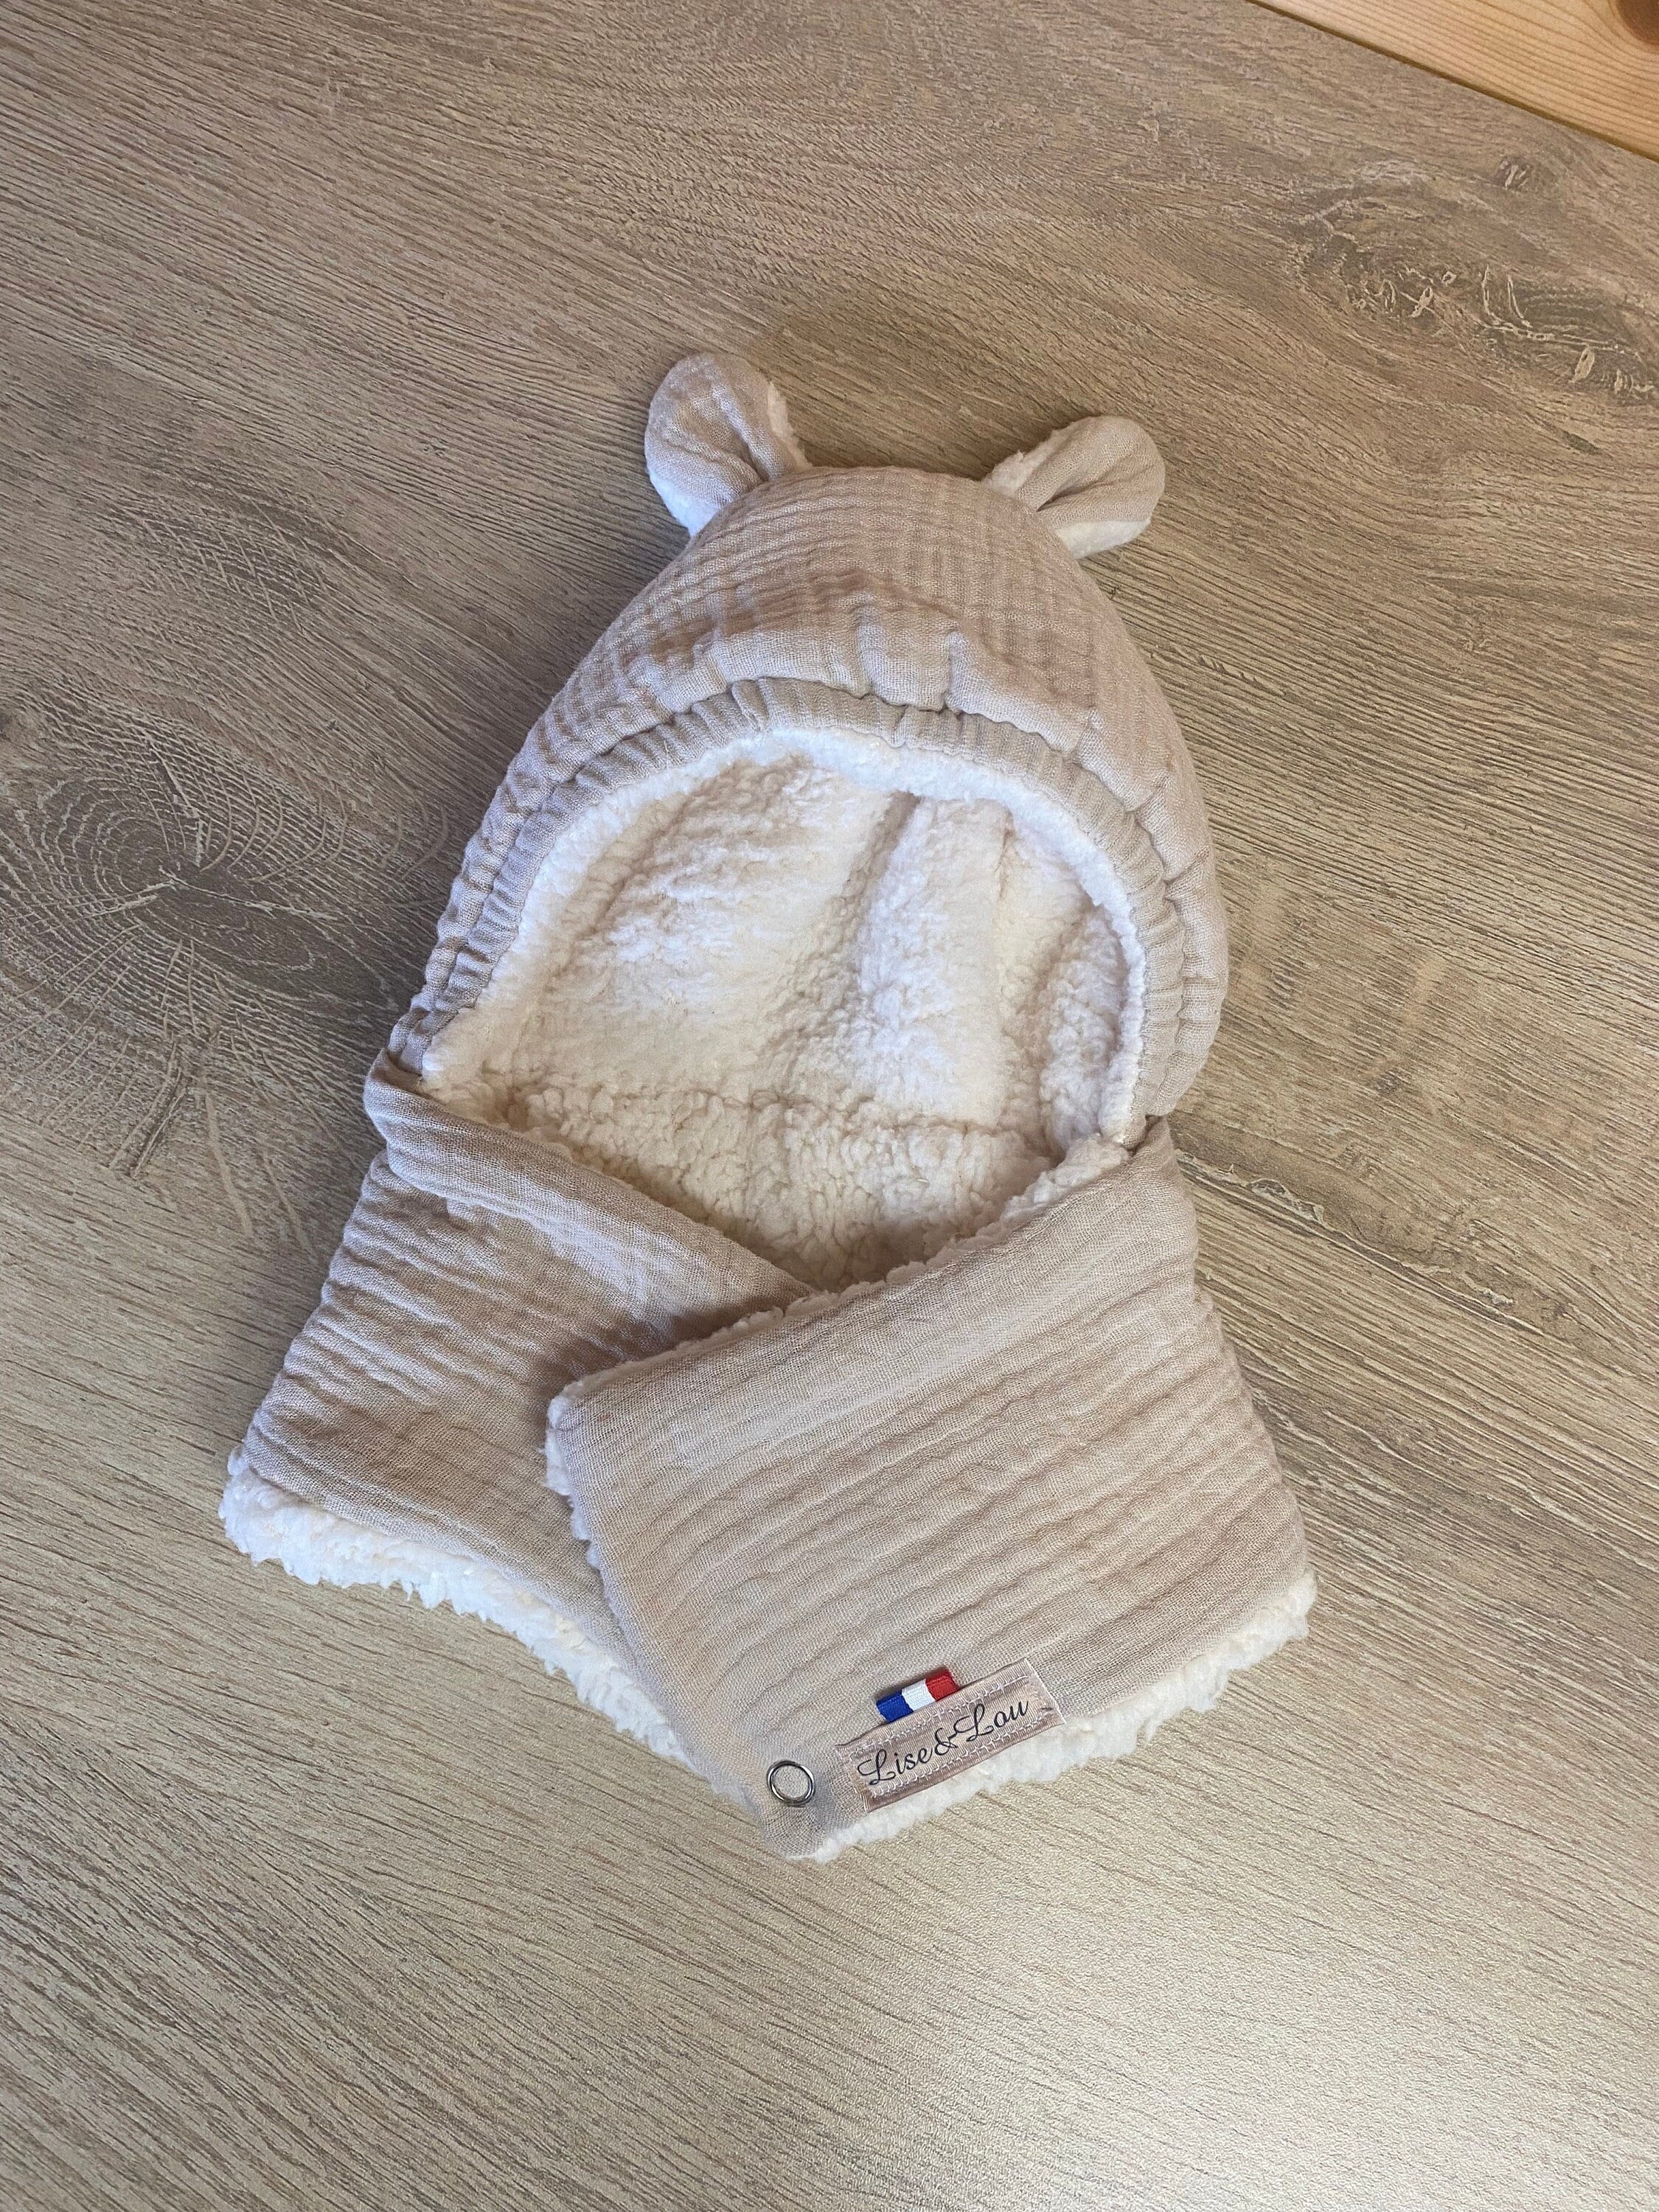 iHomey Cagoule d'hiver pour Bébé Fille Garçon 9 à 48 Mois Animal Enfant  Bonnet écharpe en Tricot Hiver Chaud Chapeaux avec Cache-Oreilles Mignon